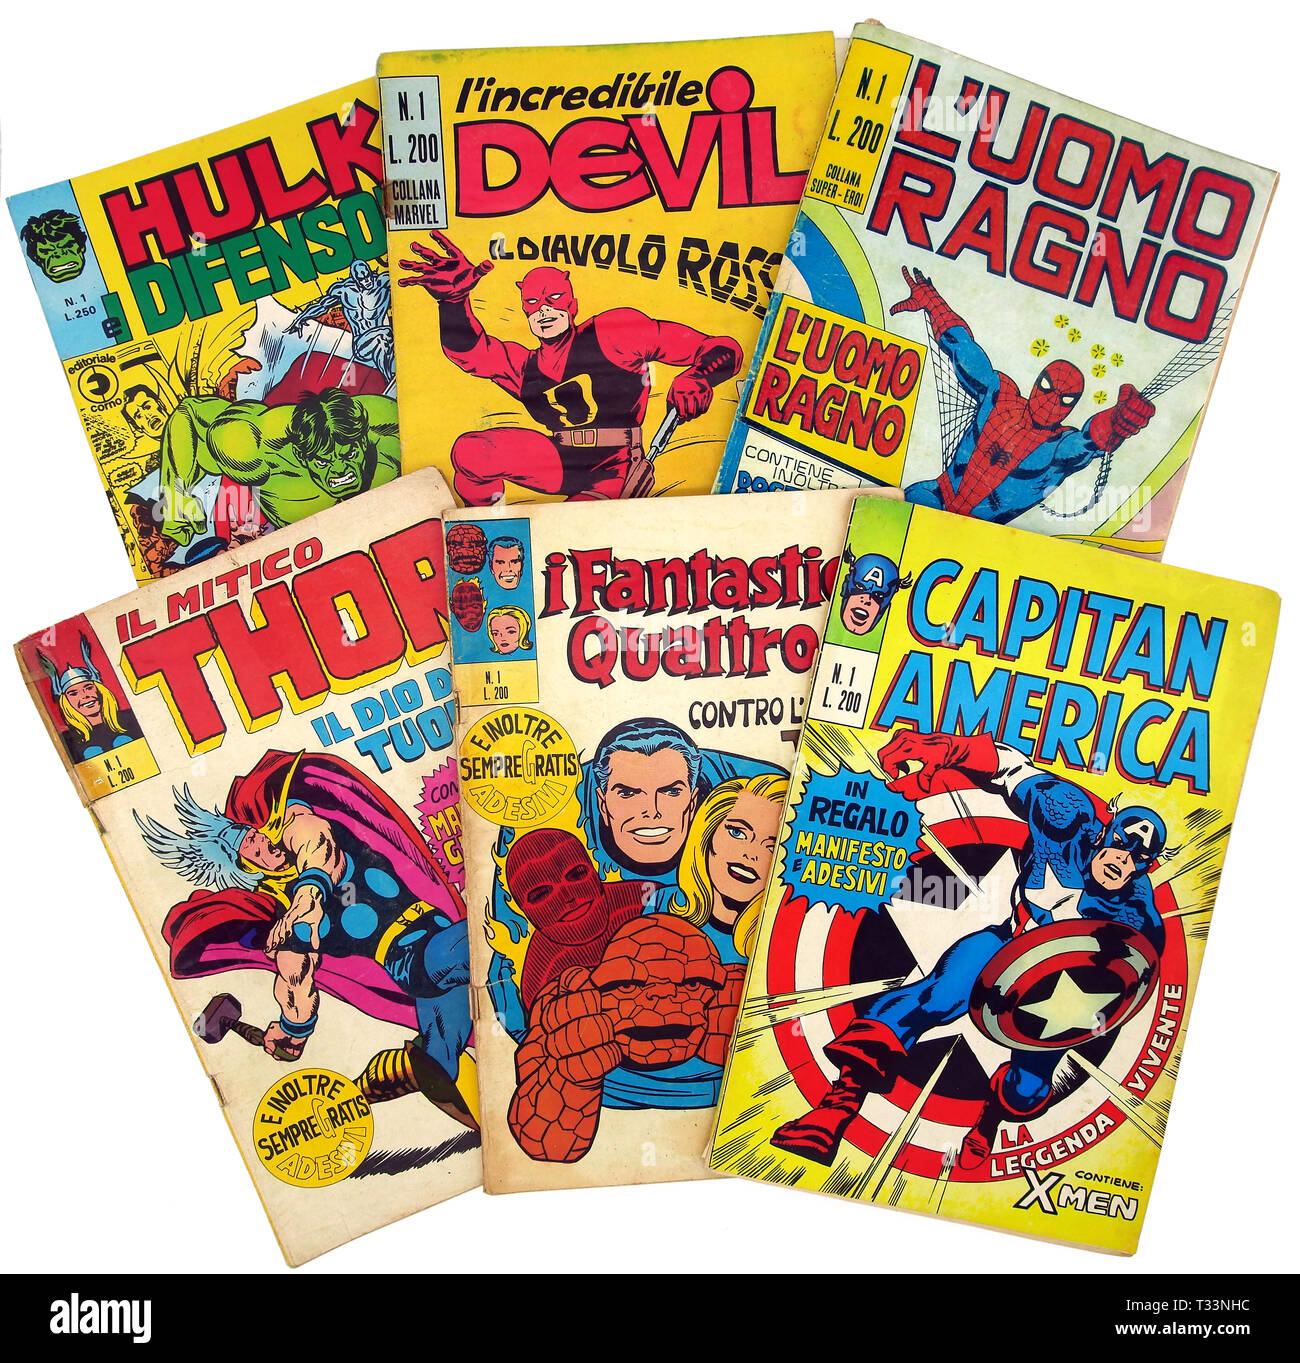 Italia - 1970-1973: prima edizione di Marvel comic books, copertura di Hulk, Daredevil, Spider-Man, Thor, fantastici 4, Captain America Foto Stock